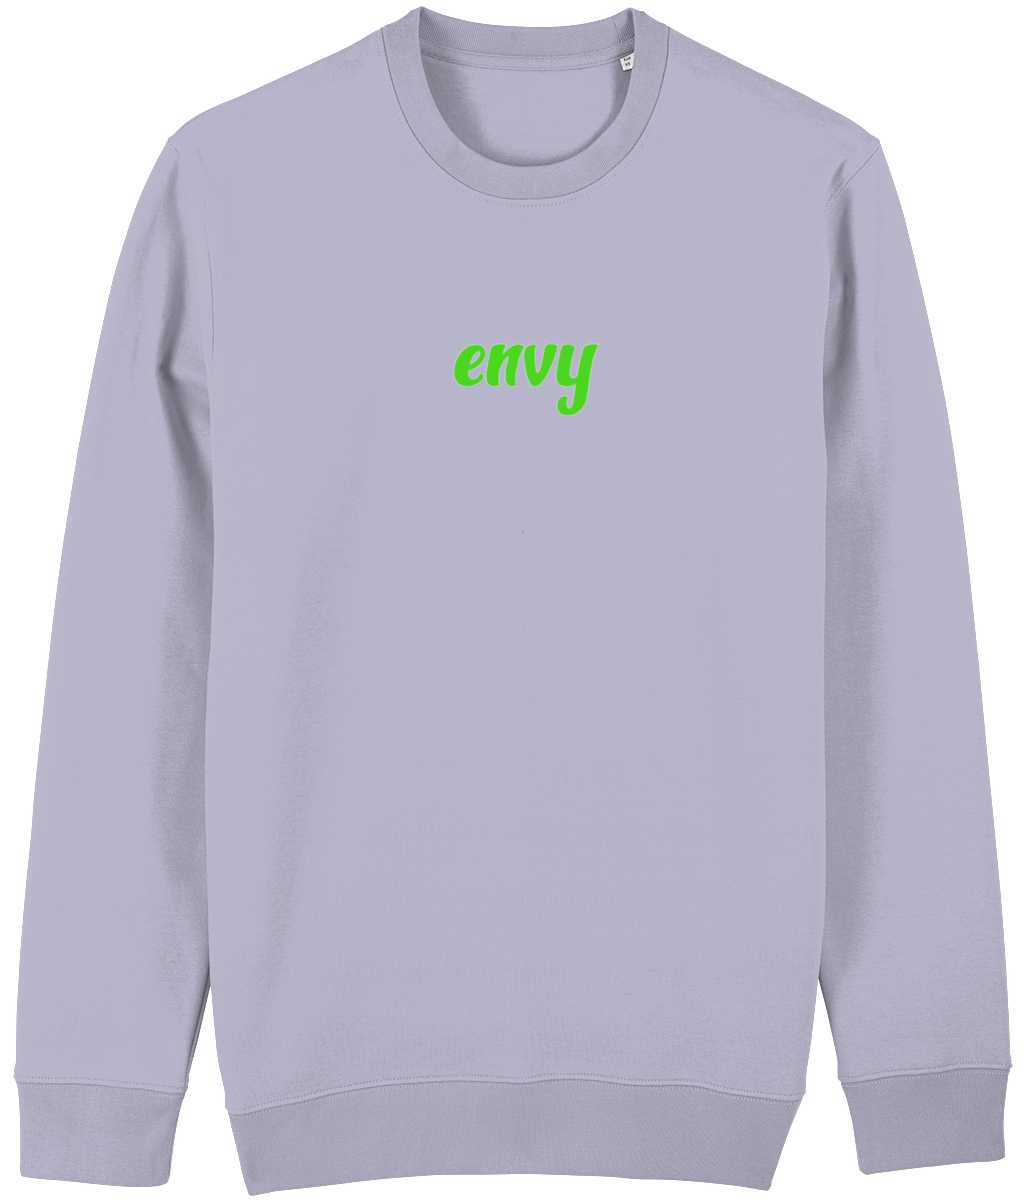 Envy non gender sweatshirt Cherchez La Femme brand